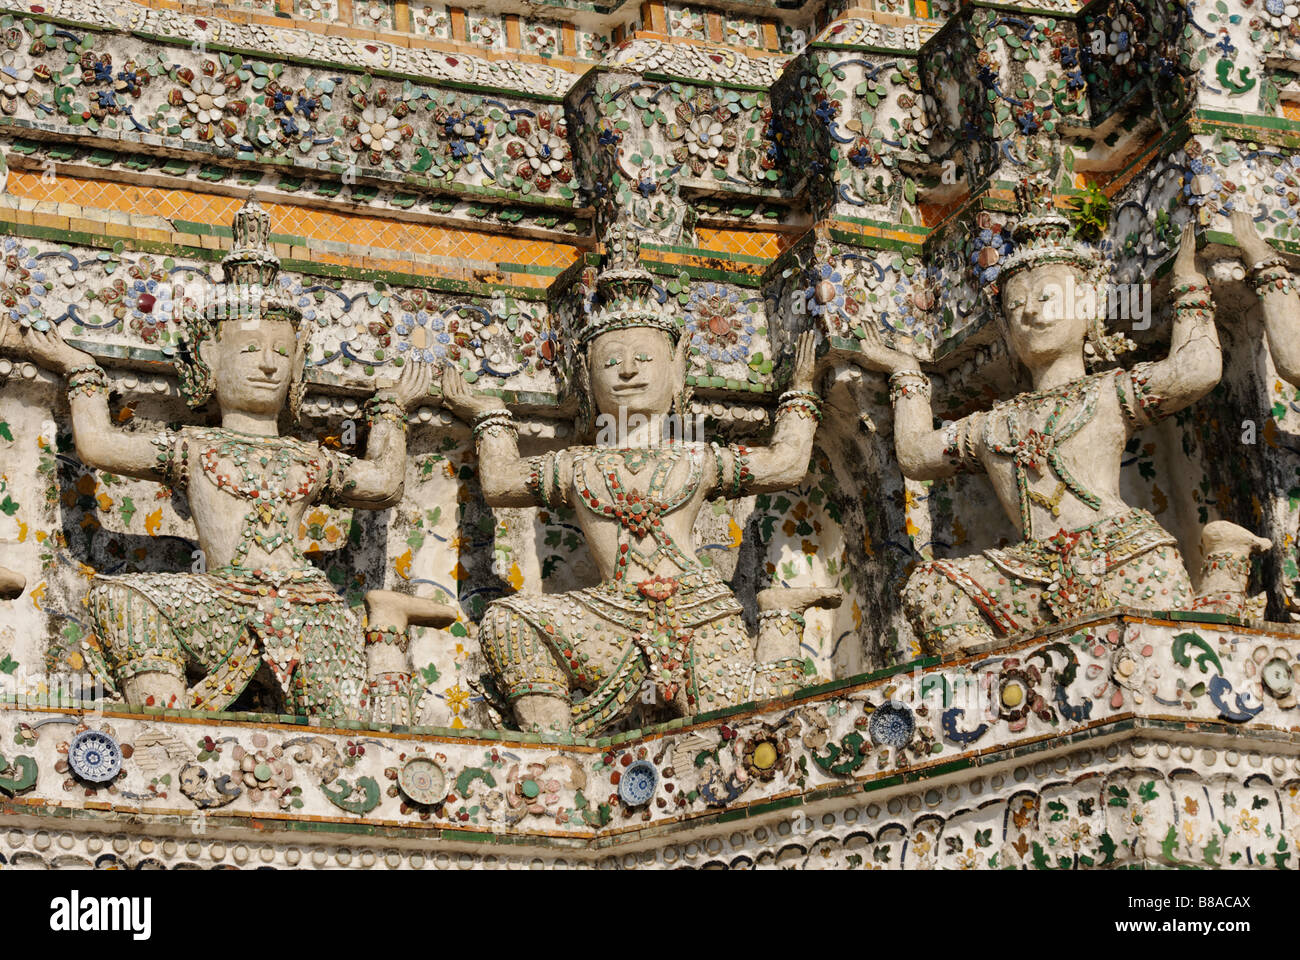 Détail des carreaux de céramique et des statues - Wat Arun temple bouddhiste à Bangkok. Thaïlande Banque D'Images